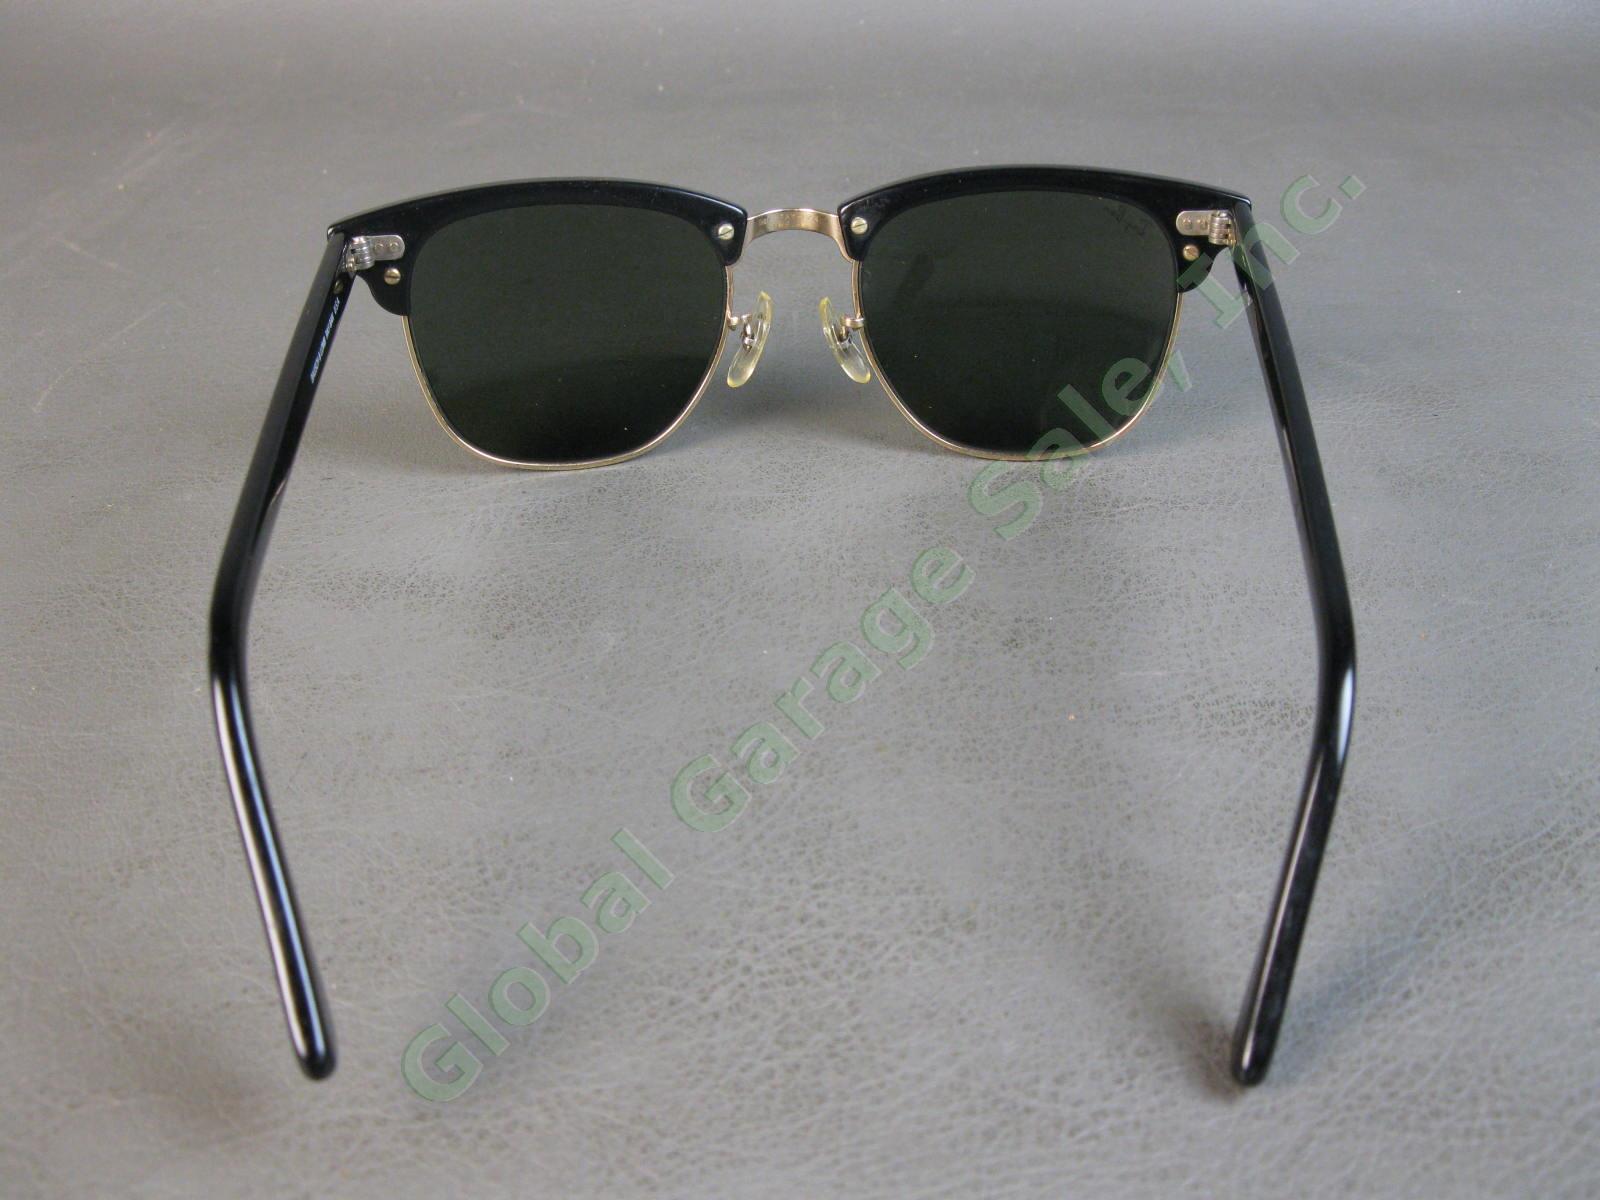 VTG B&L Ray-Ban ClubMaster Sunglasses Arista Ebony W1115 G15 RB3016 Bausch Lomb 5